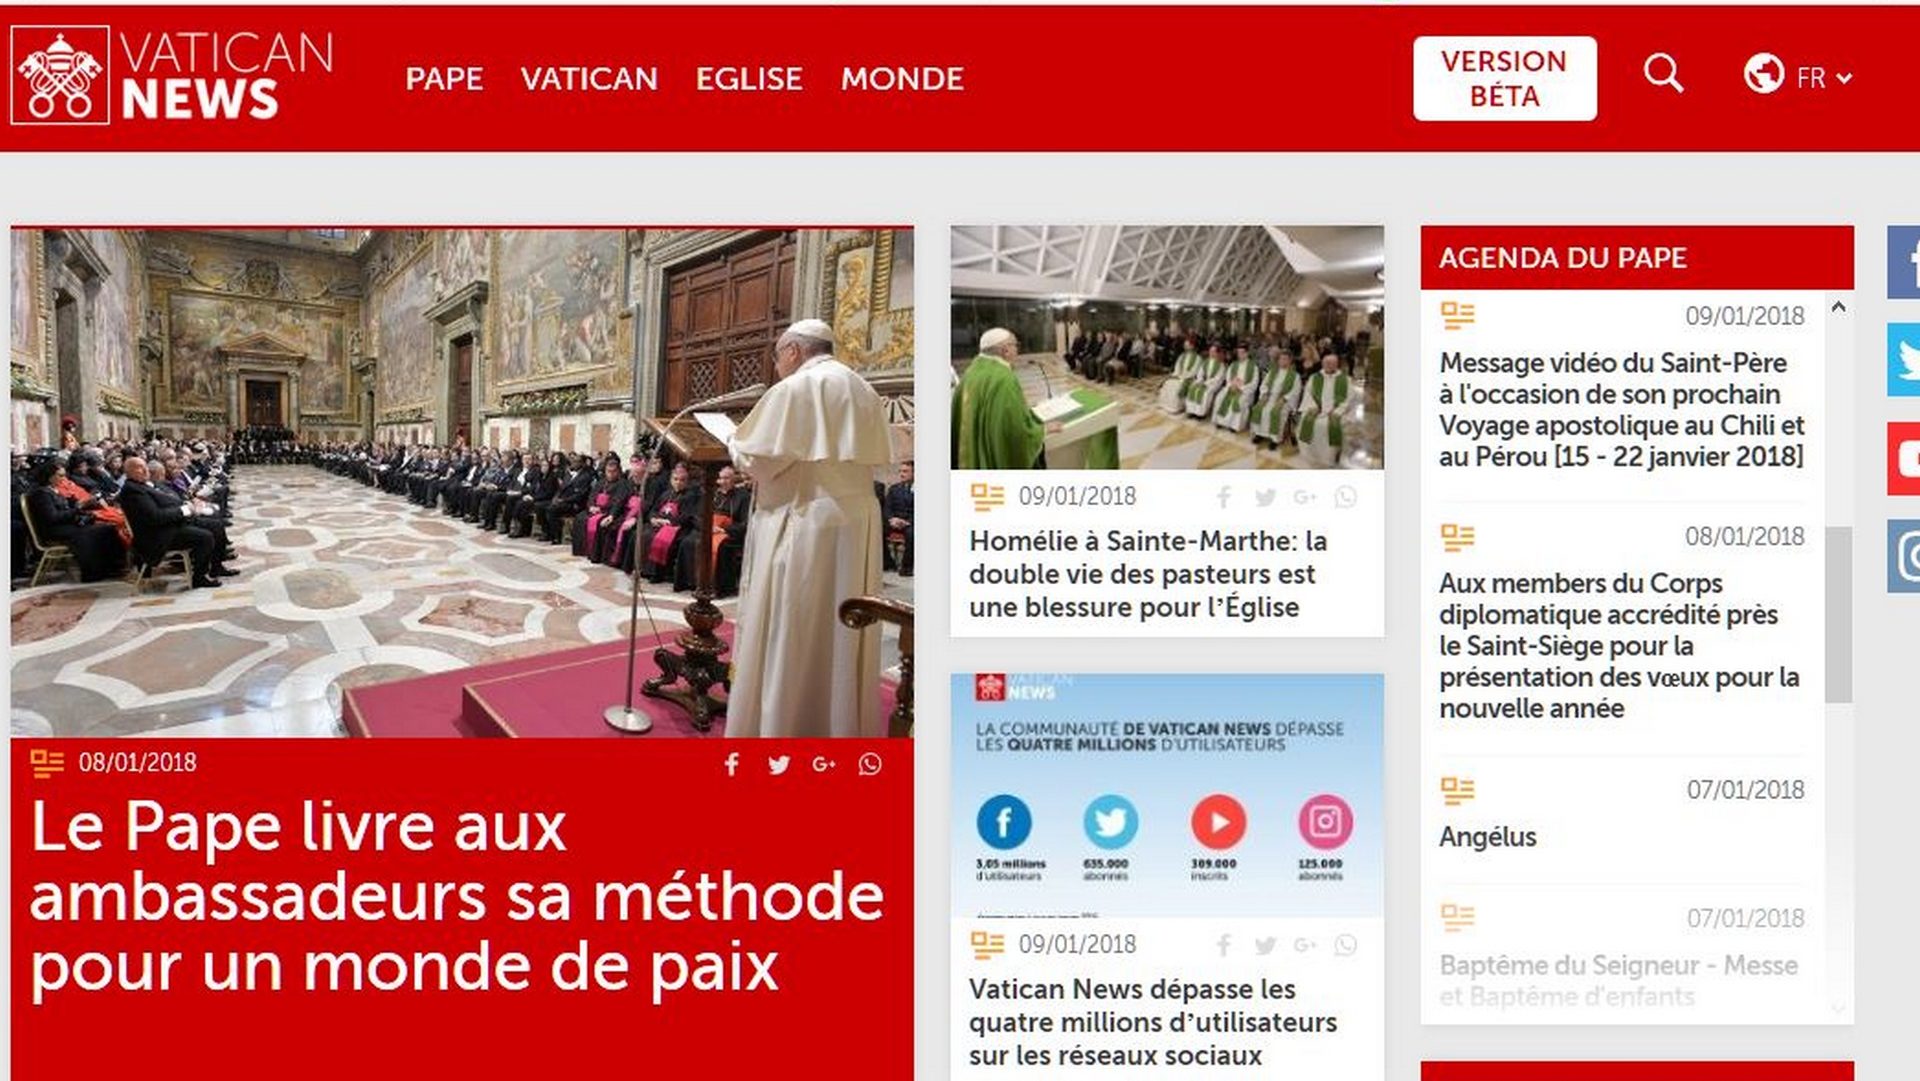 Le nouveau portail Vatican News est ouvert depuis le 17 décembre 2017 | capture d'écran